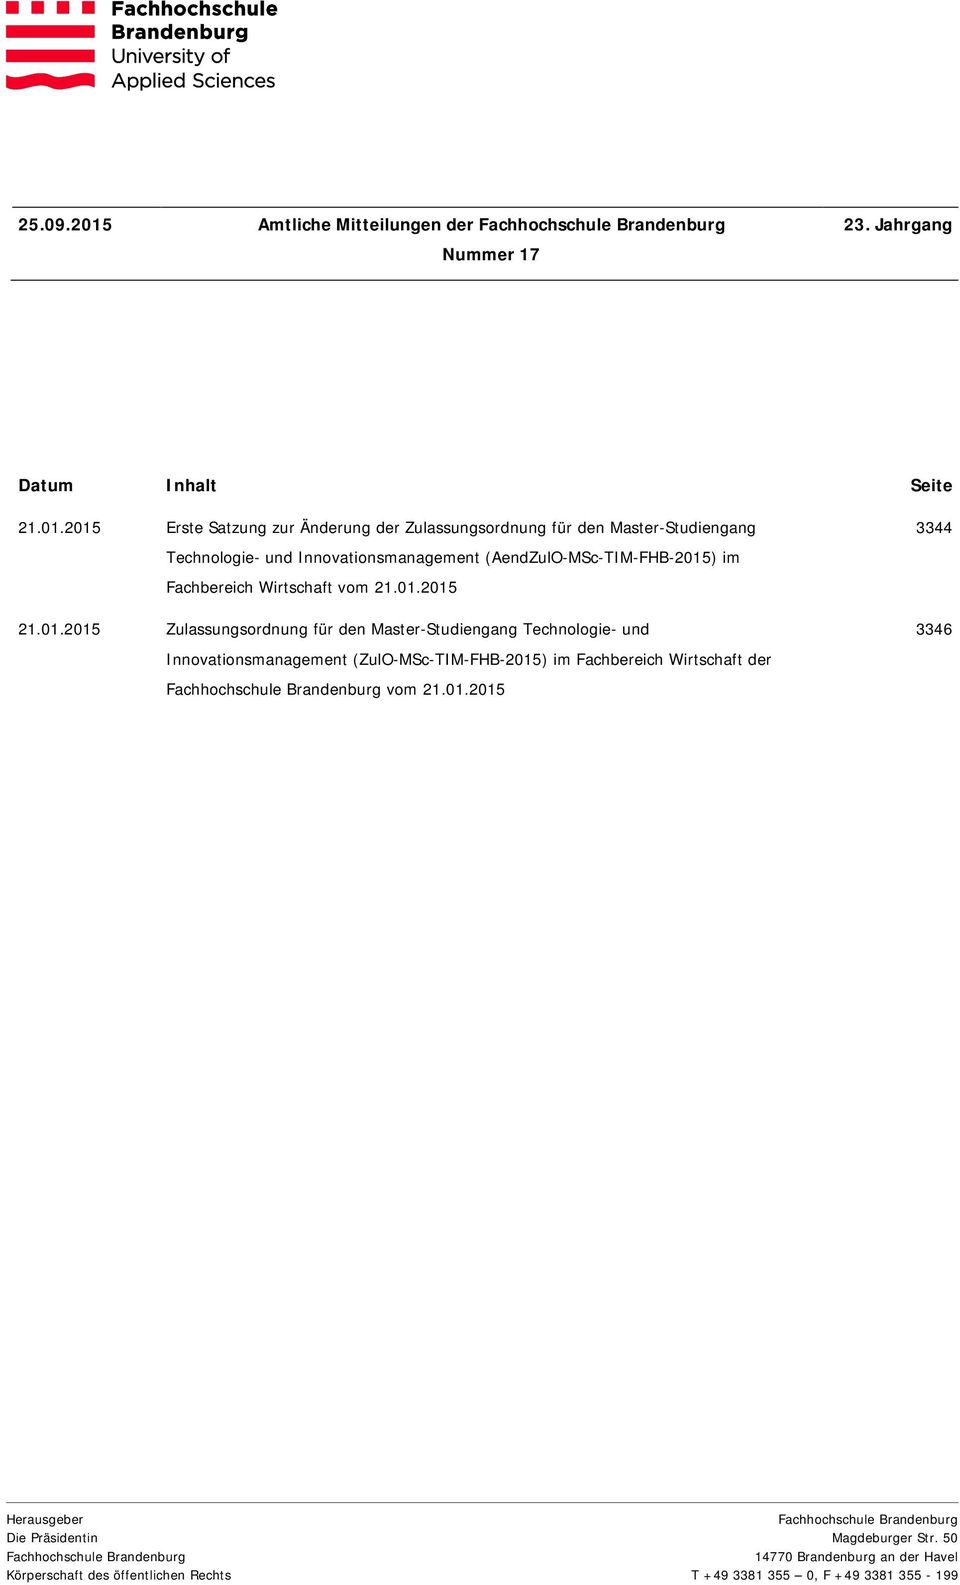 2015 Erste Satzung zur Änderung der Zulassungsordnung für den Master-Studiengang Technologie- und Innovationsmanagement (AendZulO-MSc-TIM-FHB-2015) im Fachbereich Wirtschaft